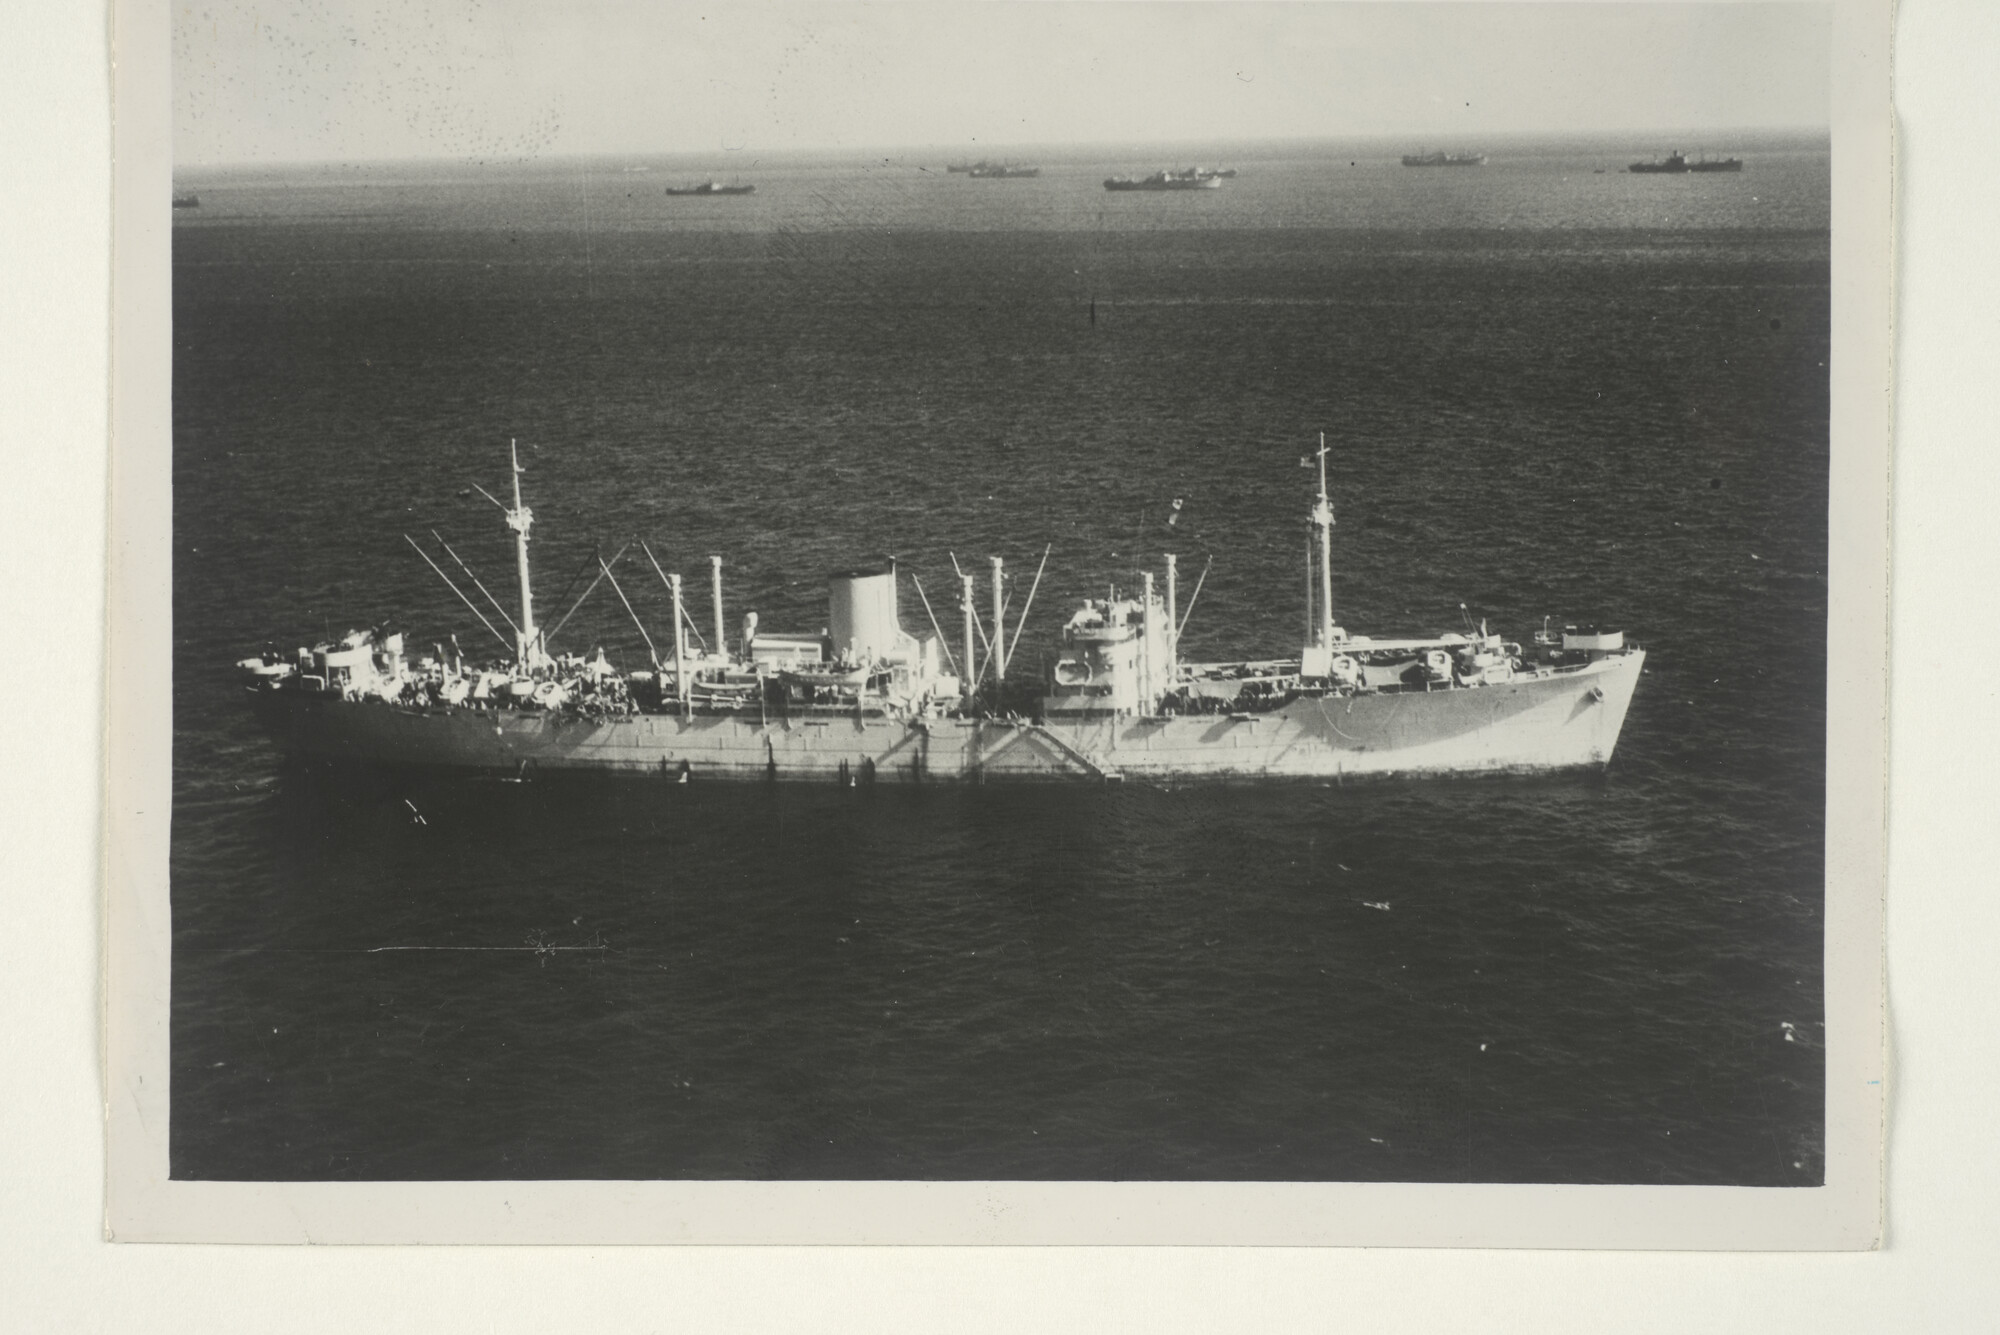 2000.3429; Het vrachtschip ms. Weltevreden van de Rotterdamsche Lloyd in oorlogsgrijs, andere geallieerde schepen in de lagune van het atol Eniwetok; foto